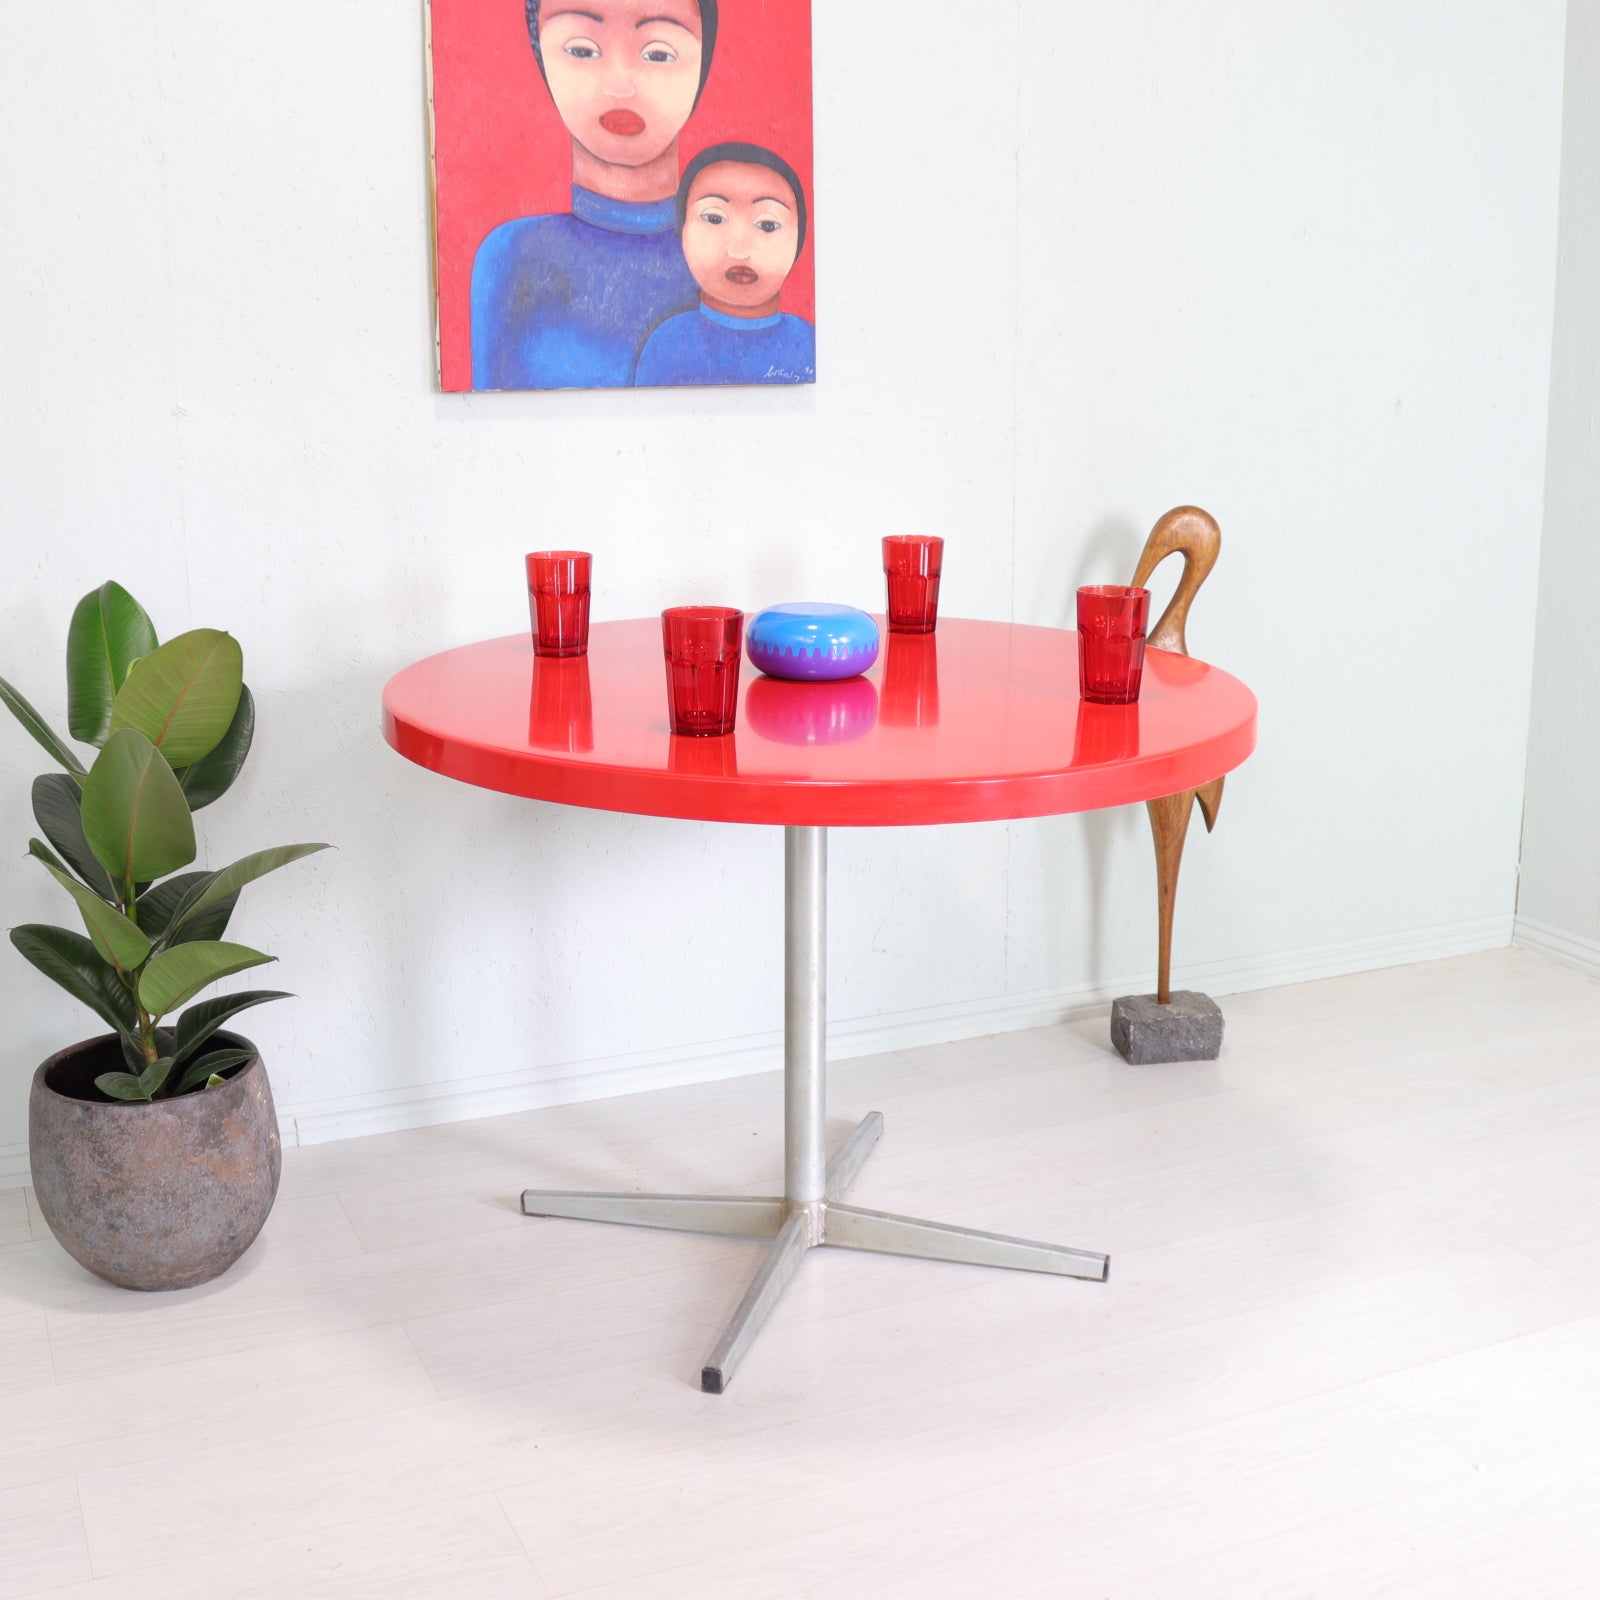 Red Fibreglass and Metal Flip Top Dining Table - teakyfinders